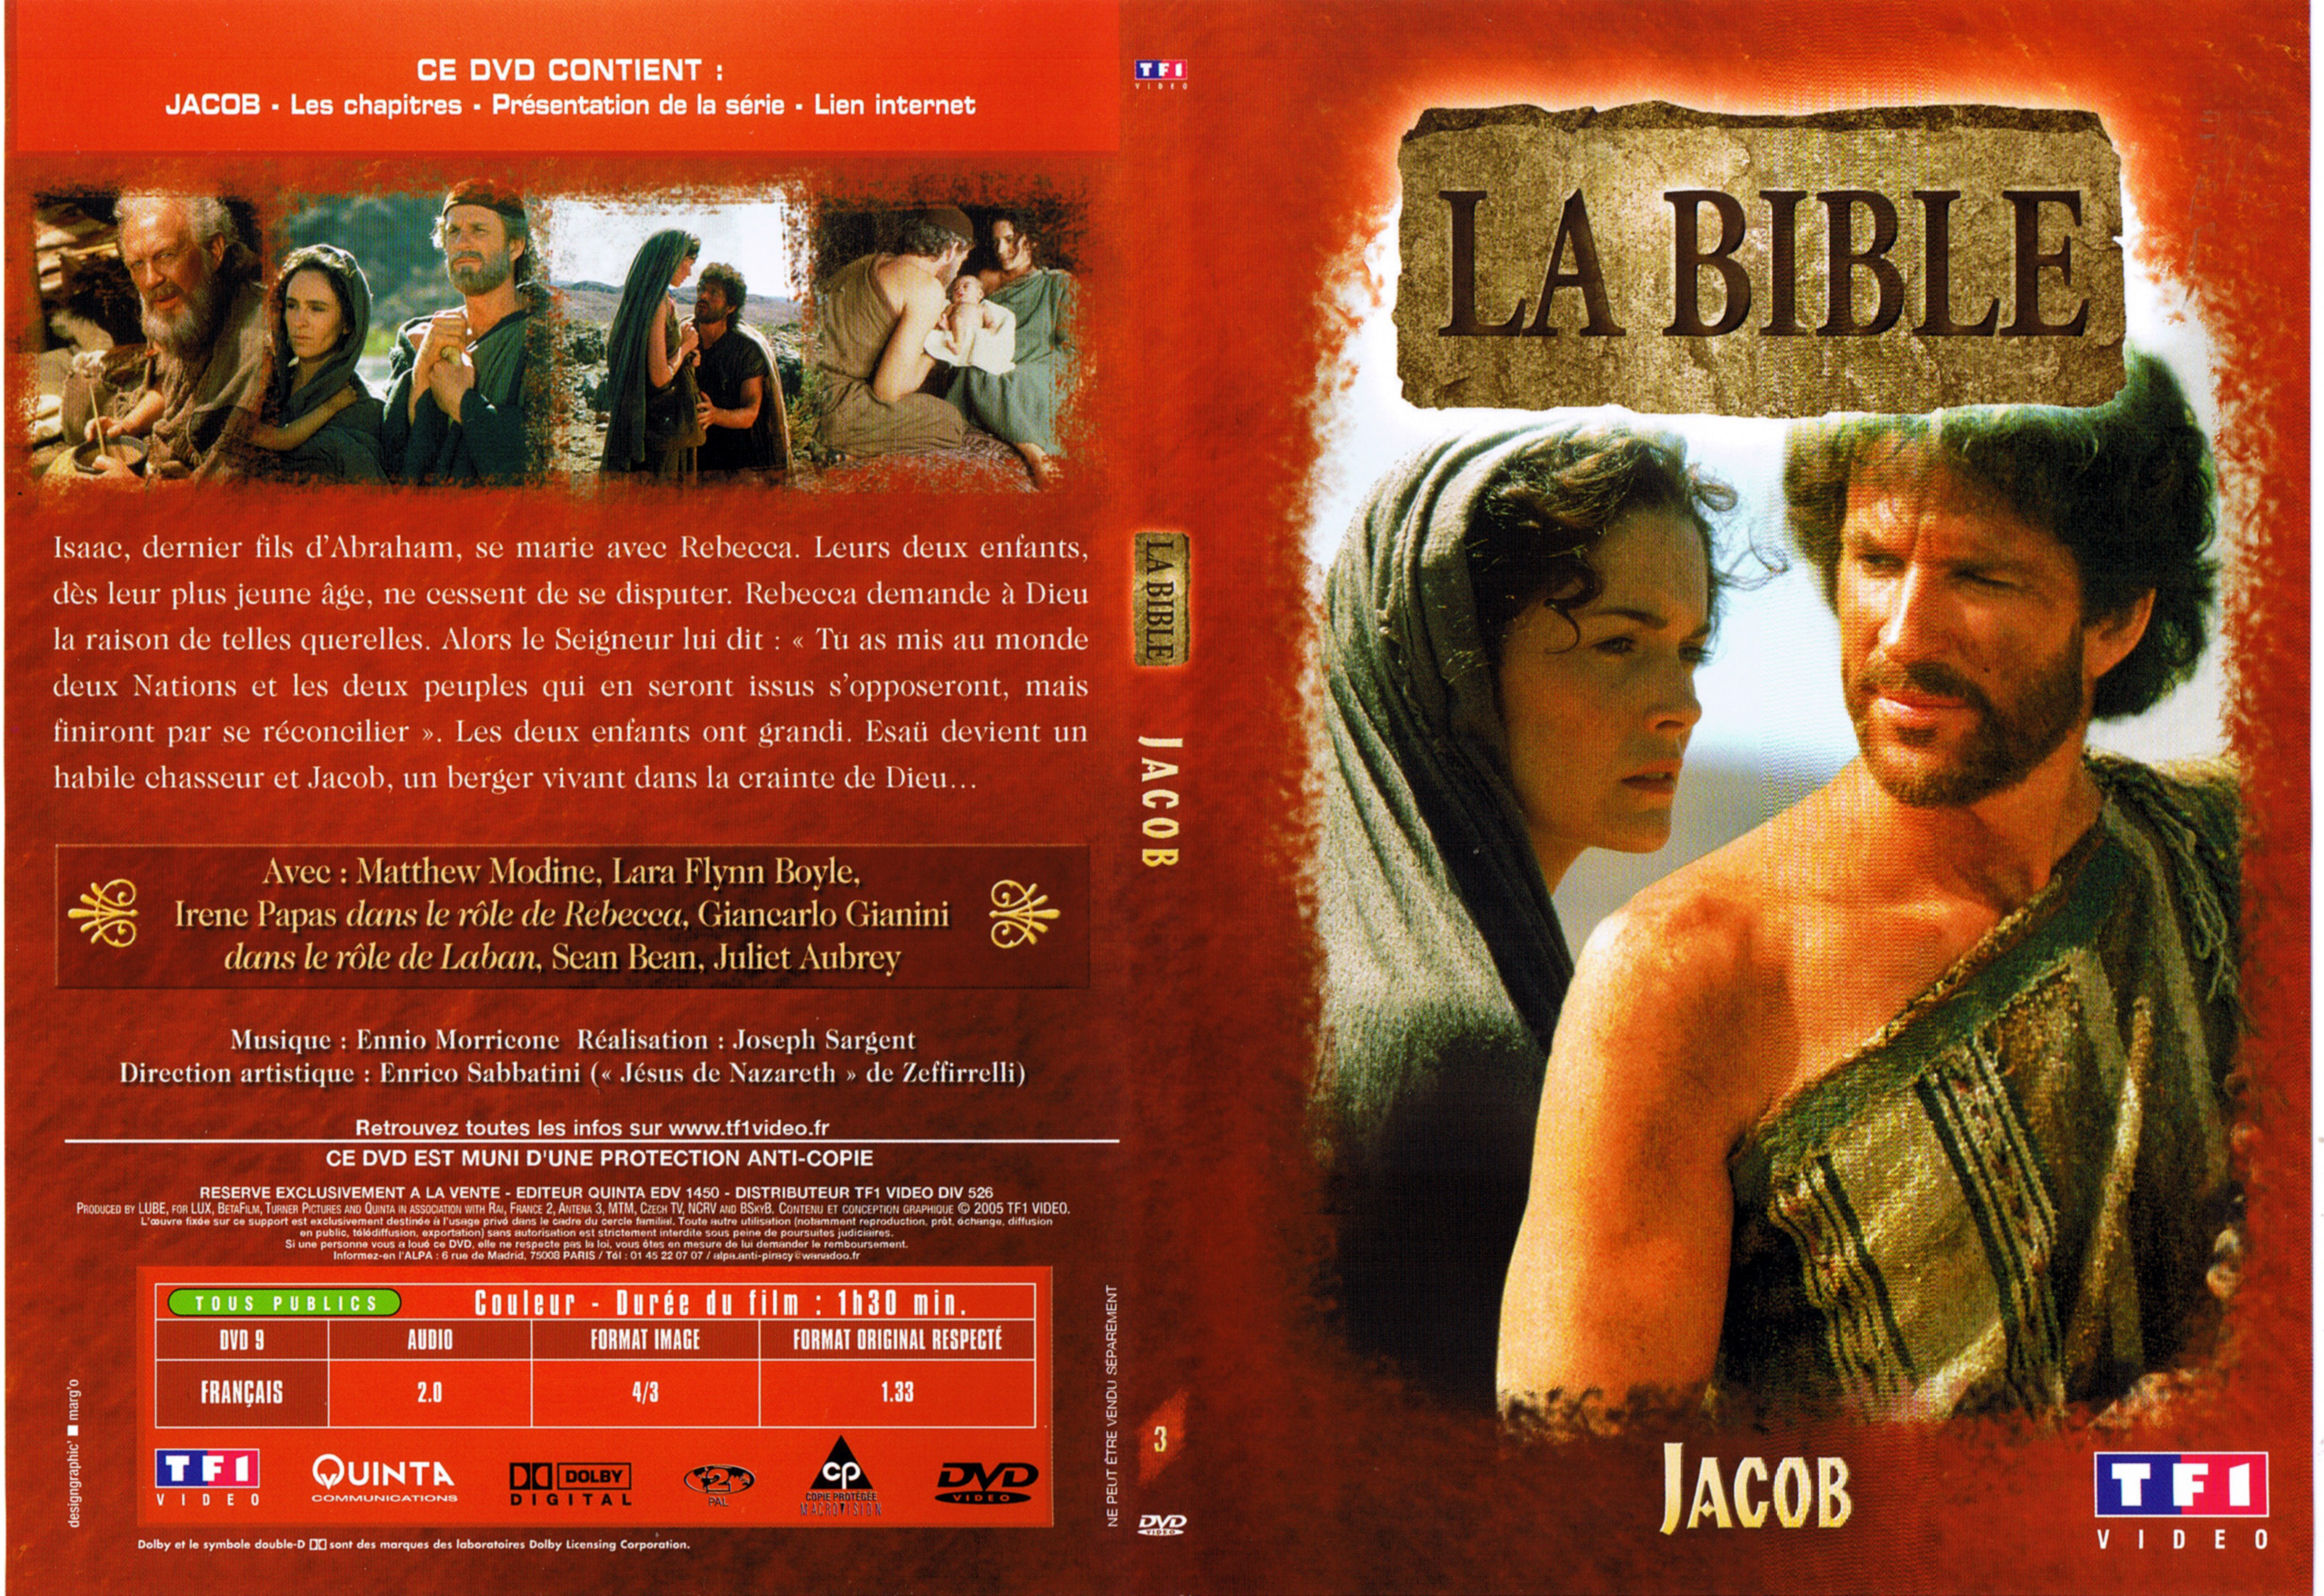 Jaquette DVD La bible - Jacob